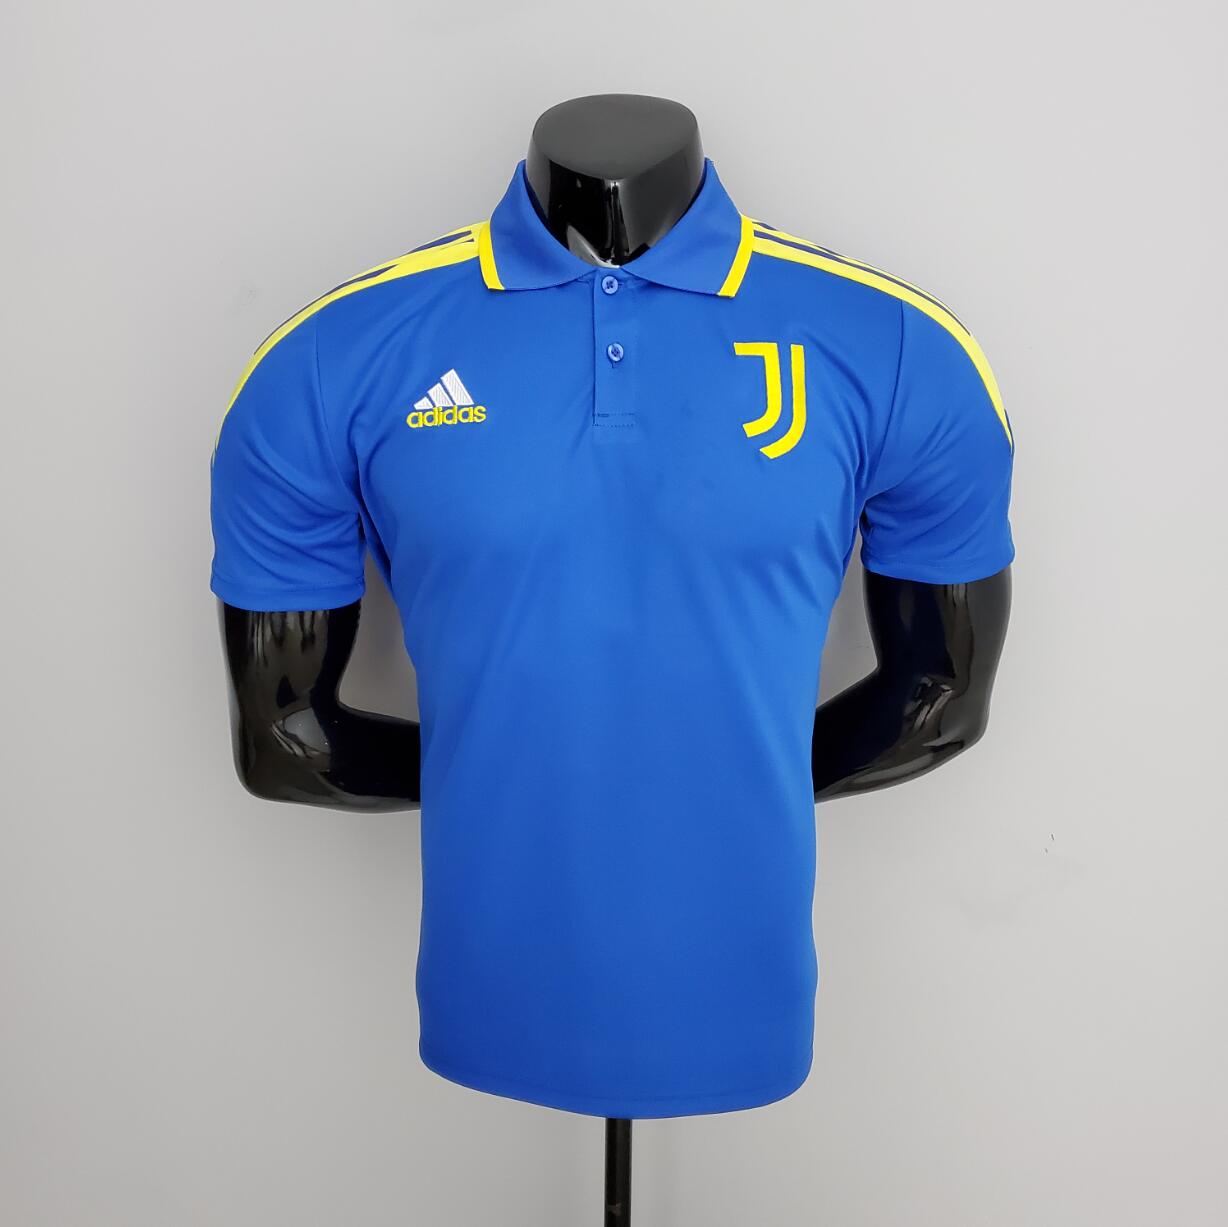 POLO 21/22 Juventus Training Suit Azul